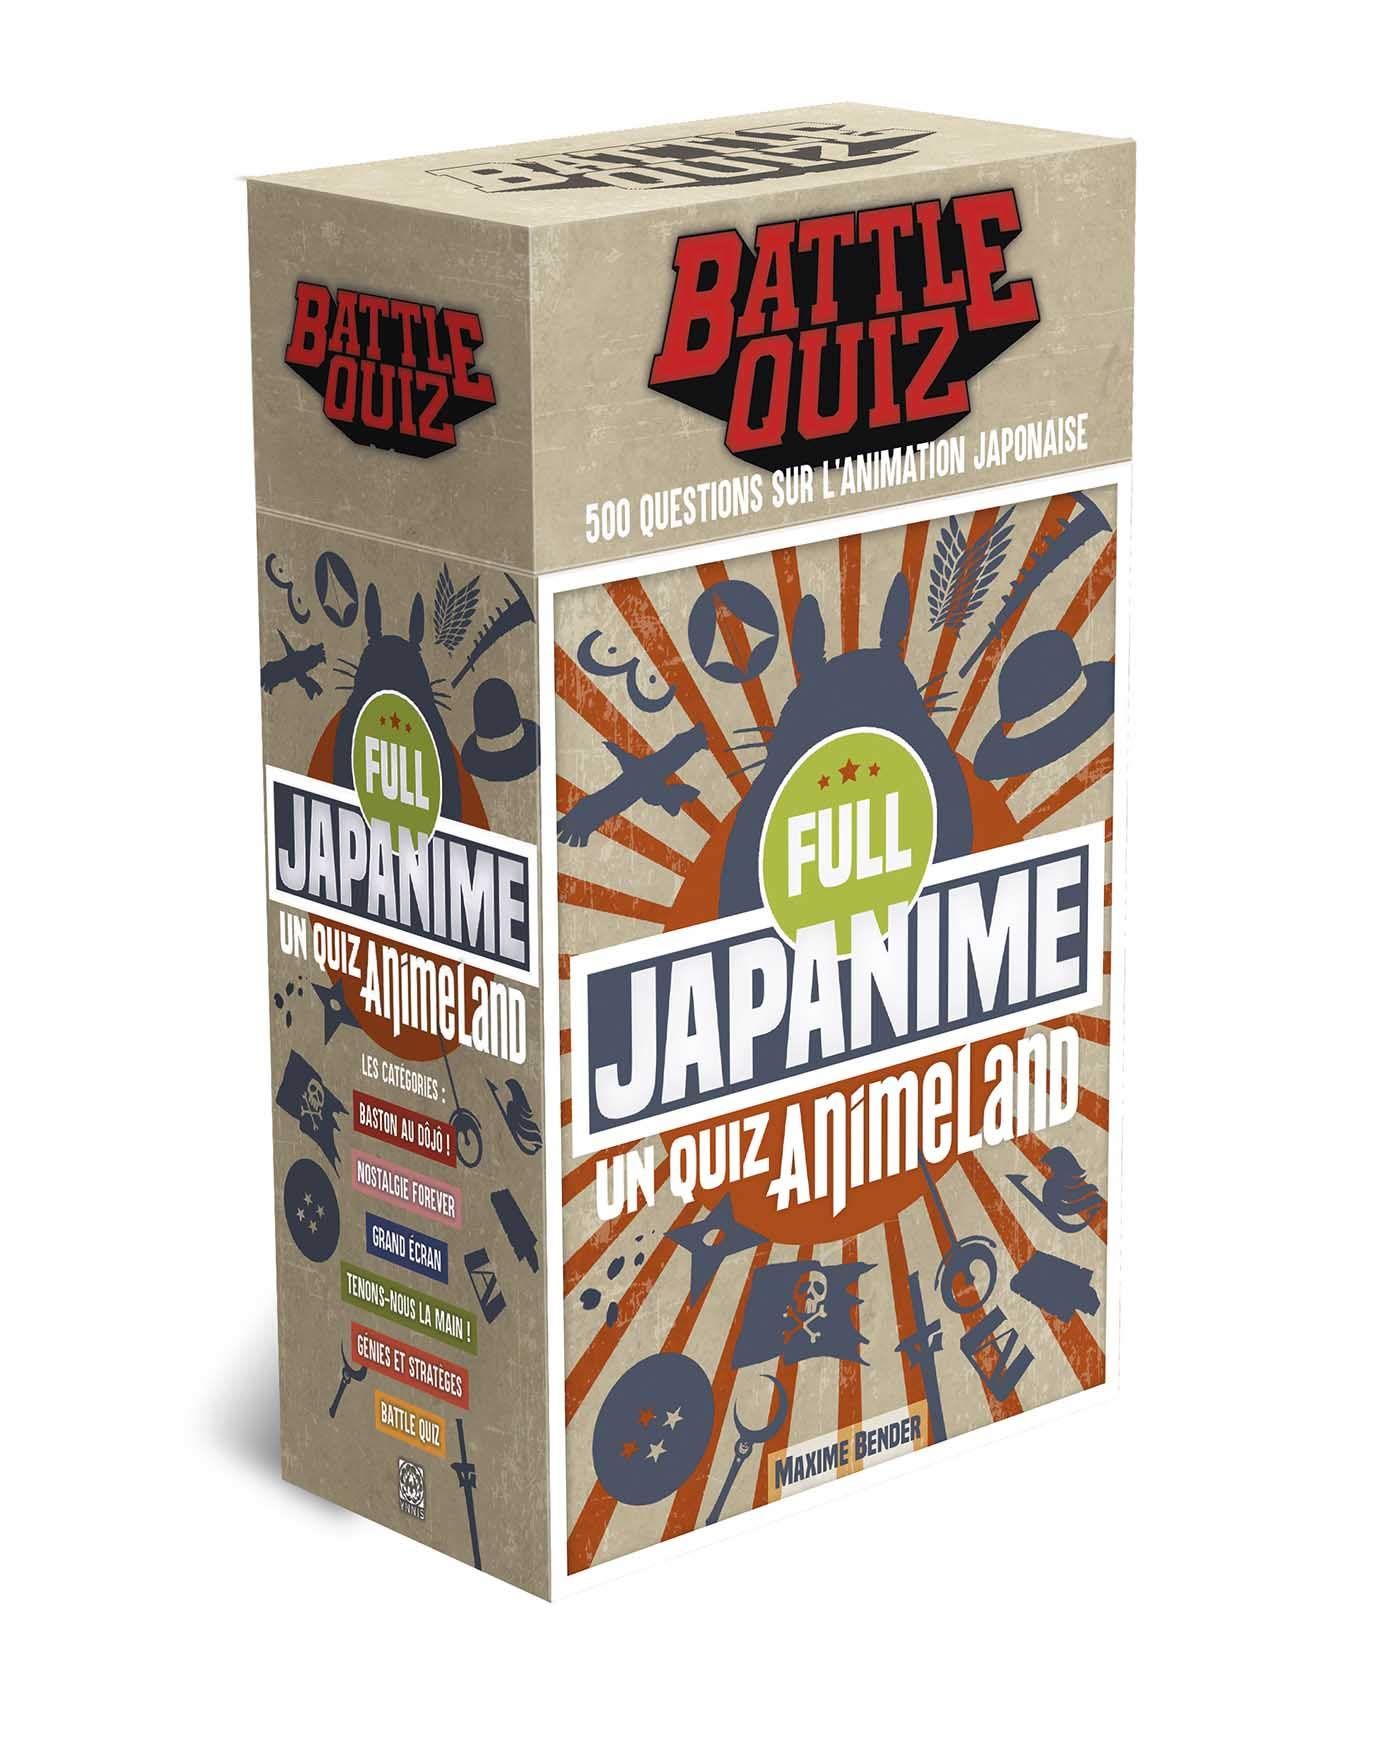 goodie - Battle Quiz: Full Japanime